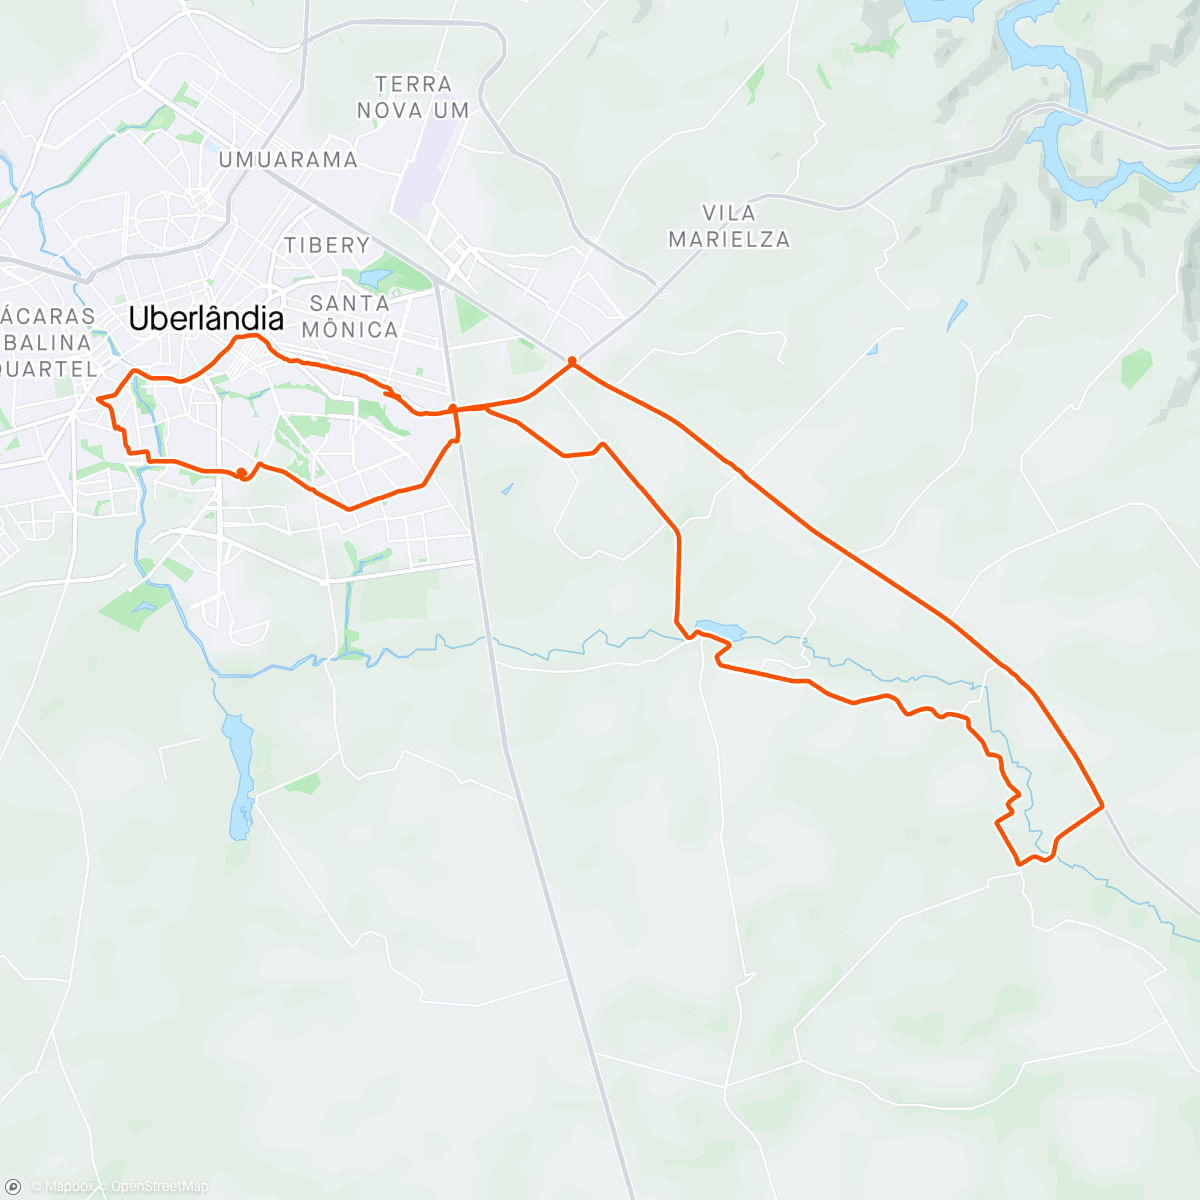 「ATV. FIS. 117/2.024
TRILHA DO PÃO DE QUEIJO 
70 kms」活動的地圖